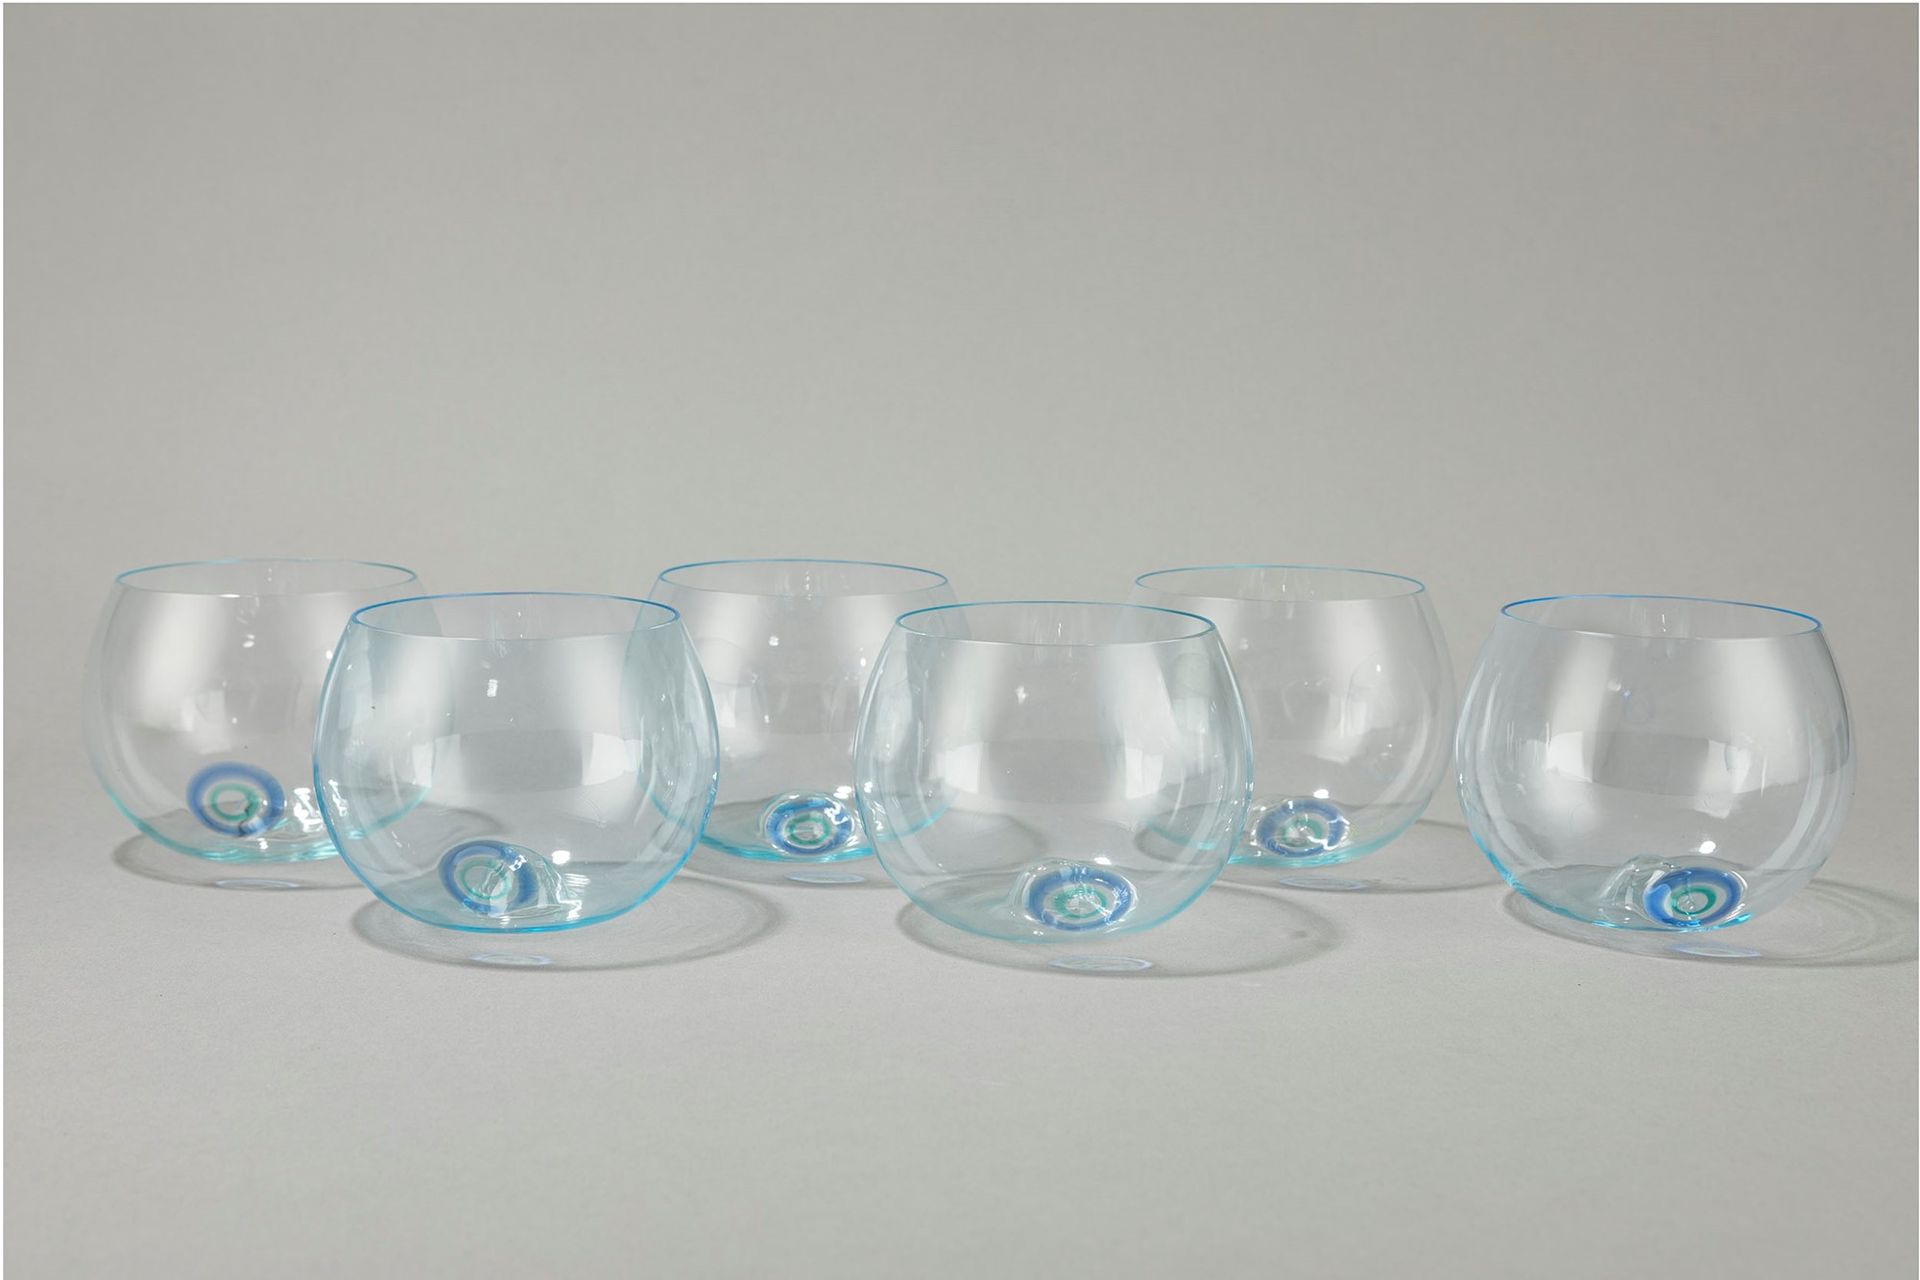 Gian Maria Potenza, Lino Tagliapietra Seis vasos, 1968

H 9 cm
vidrio soplado y &hellip;